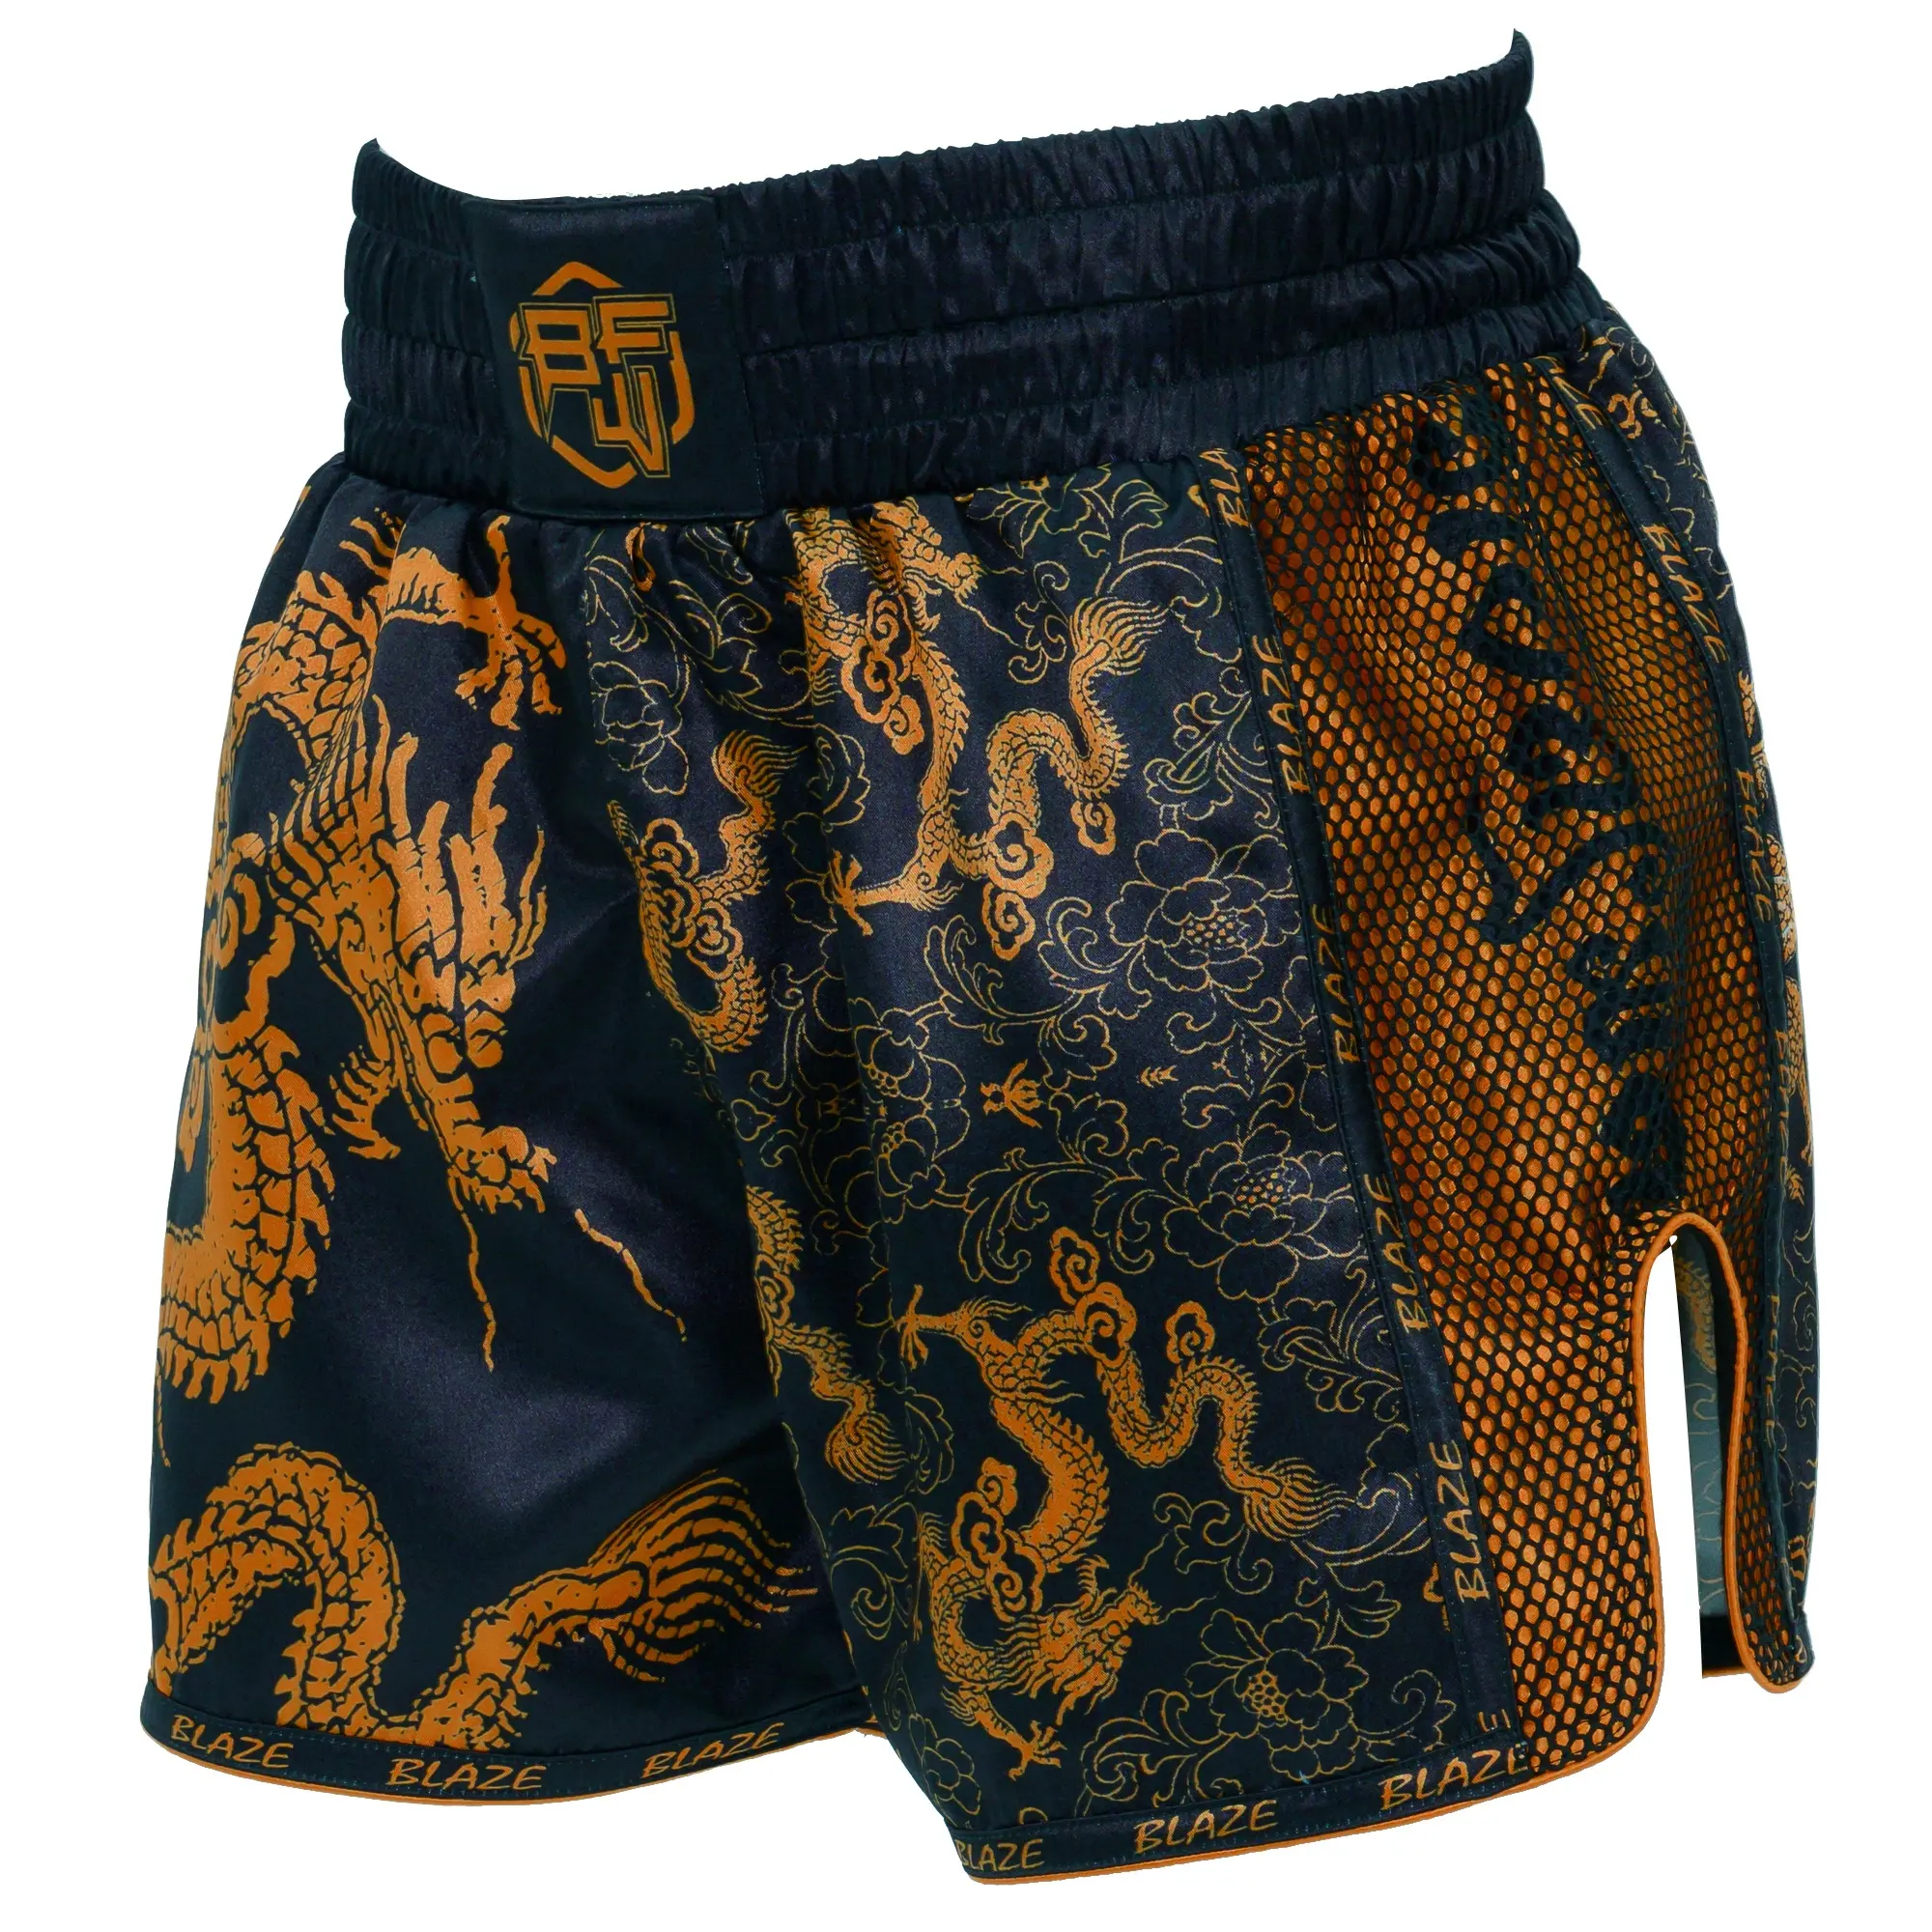 Индивидуальные сублимационные шорты Muay Thai, плавки, шорты для тренировок по боевым искусствам в тренажерном зале